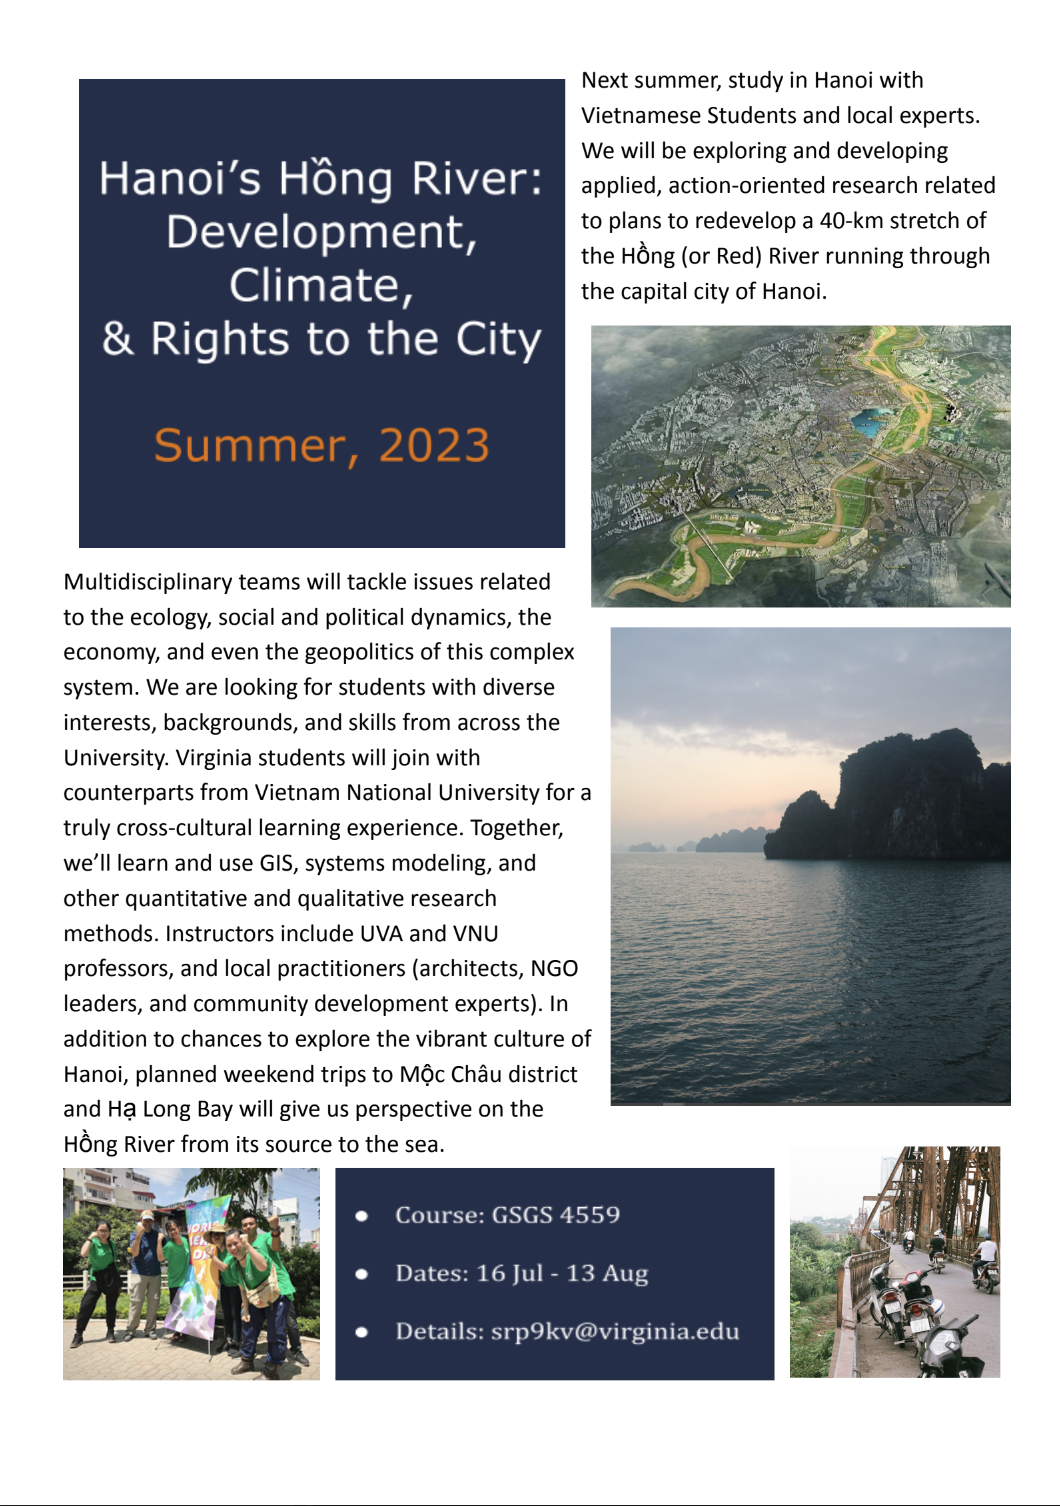 UVA in Vietnam: Info Session for Summer 2023